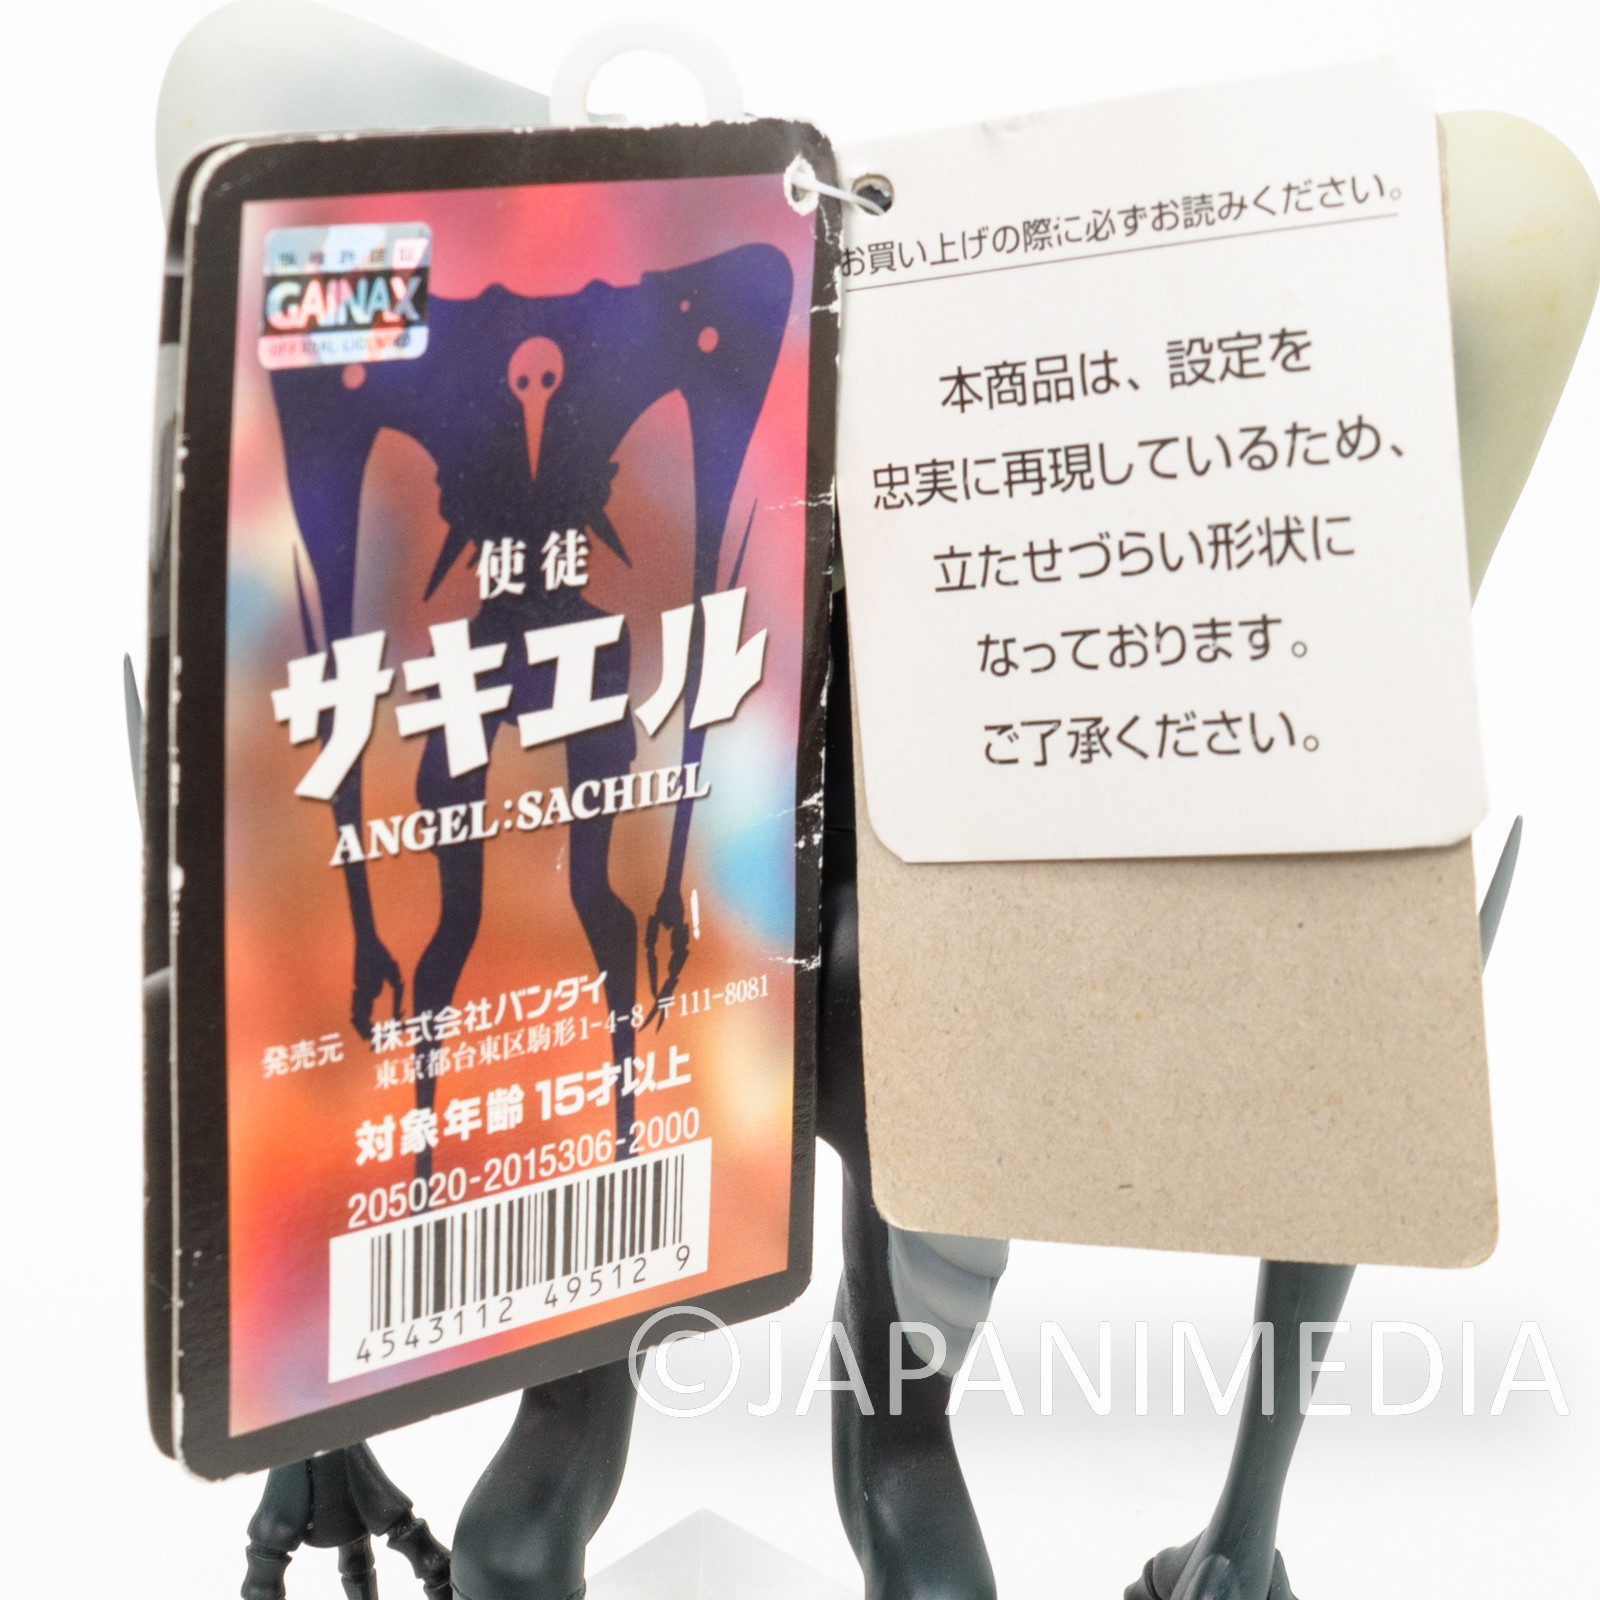 RARE! Evangelion Shito Angel Sachiel 8" Soft Vinyl Figure BANDAI